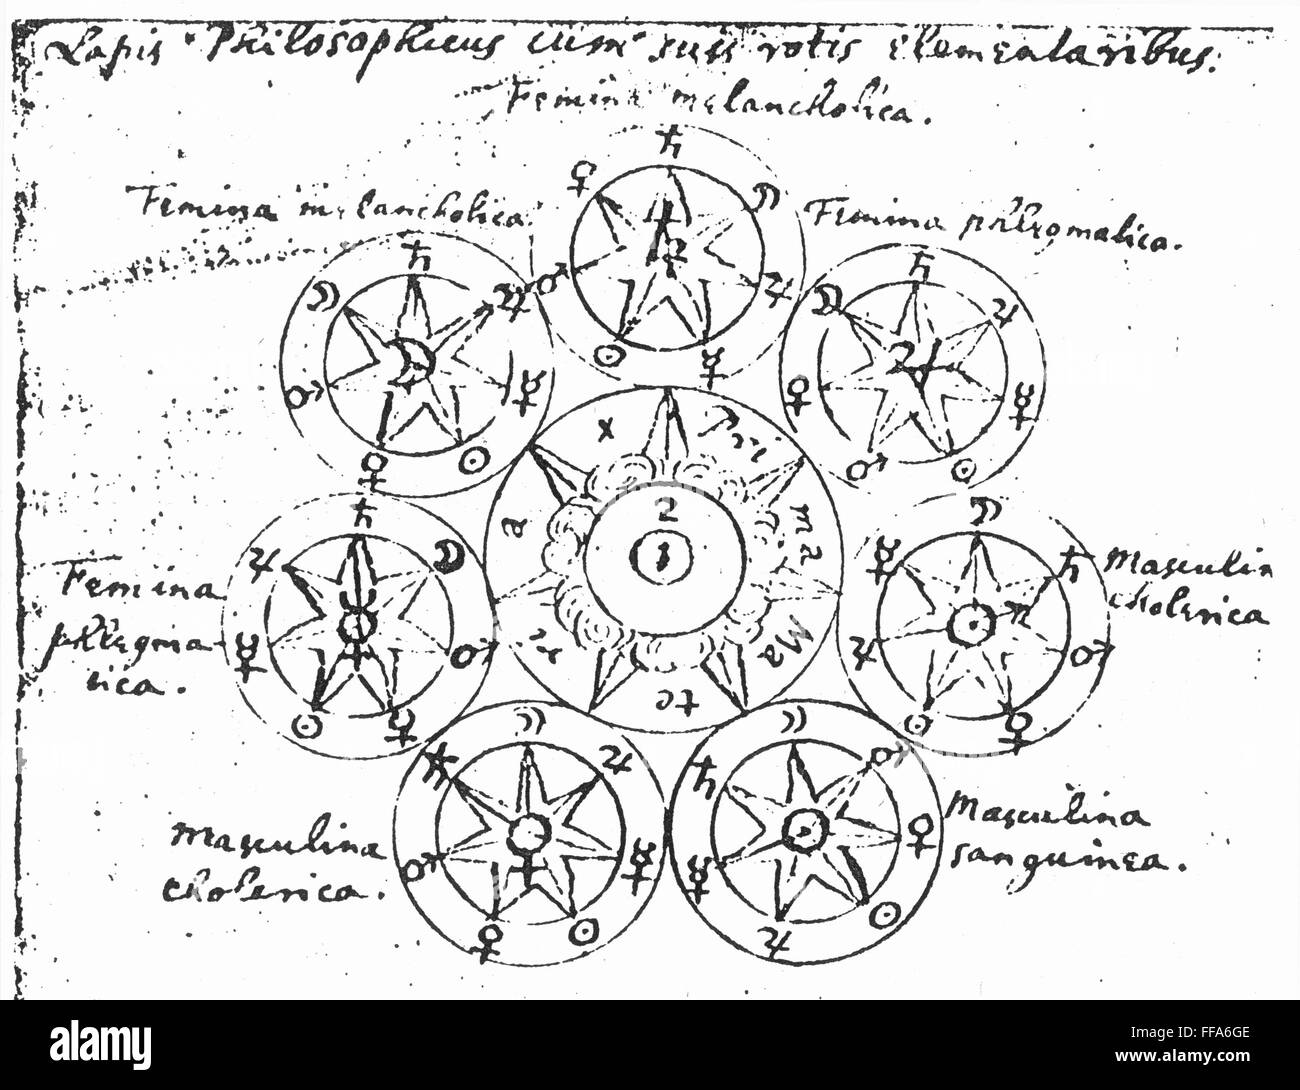 Alchemie: ISAAC NEWTON /n(1642-1727). Englischer Physiker und Mathematiker. Sir Isaac Newton Kopie eines Diagramms der "Stein der Weisen", einmal gesucht von Alchemisten in der Überzeugung, dass es unedle Metalle in Gold oder Silber verwandeln würde. Stockfoto